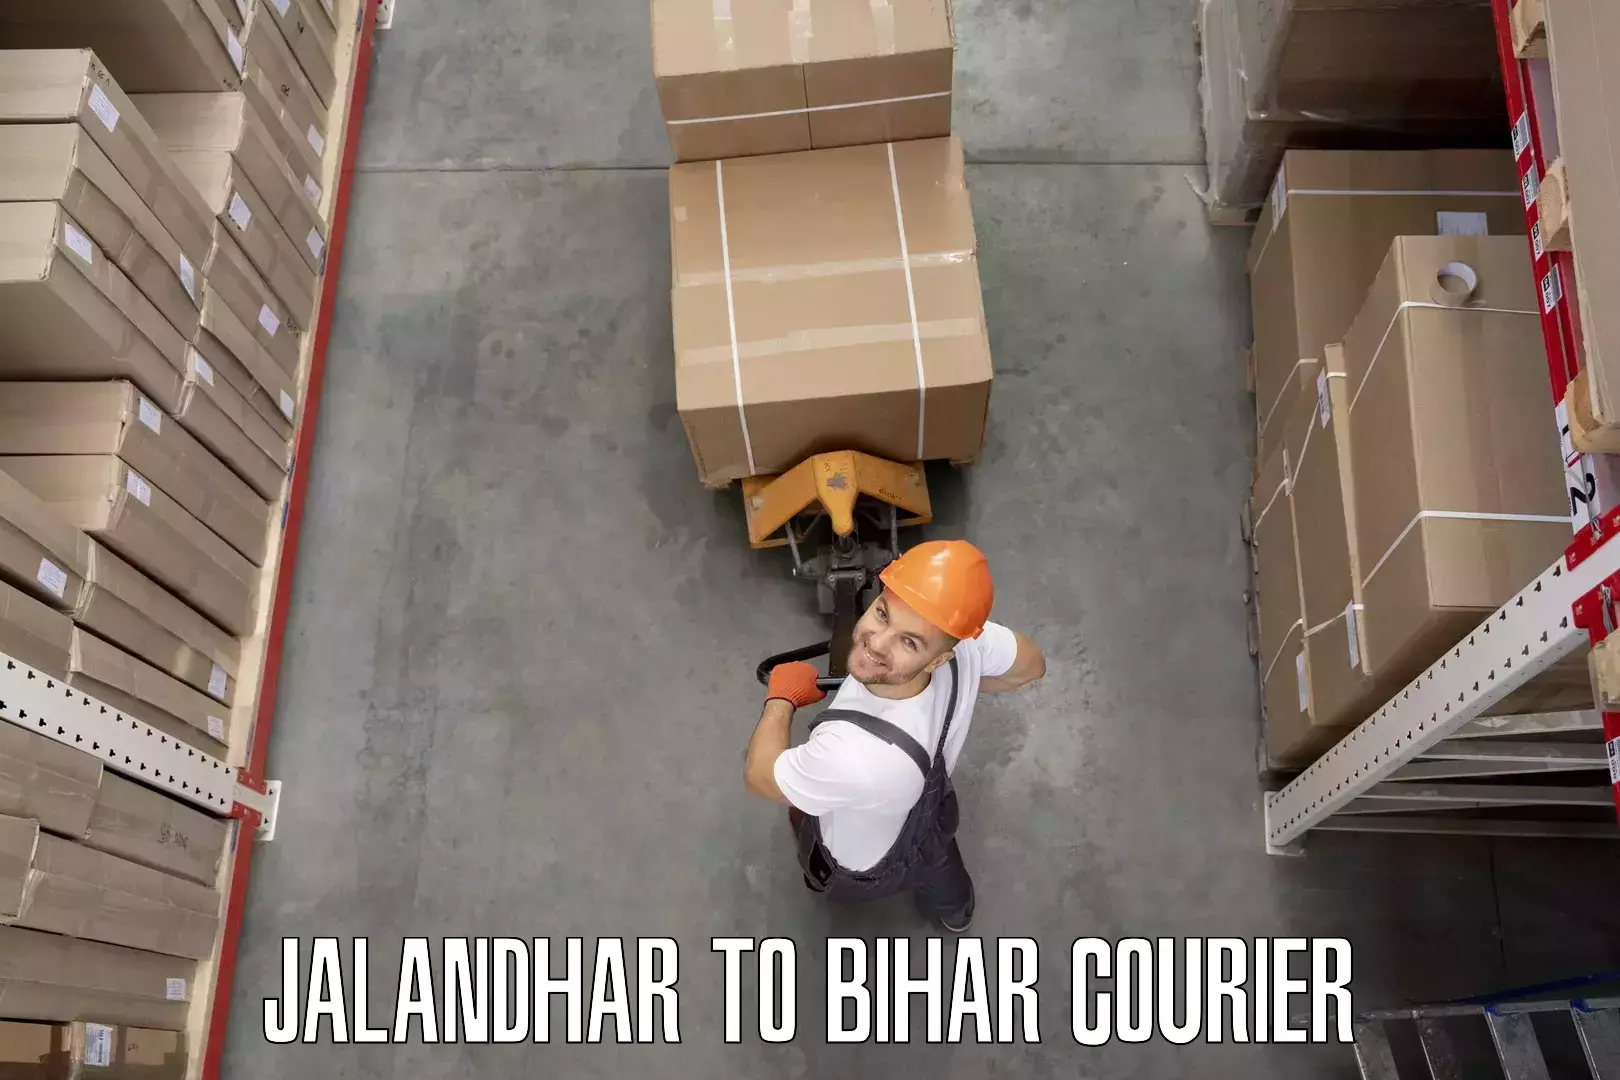 Home goods moving company Jalandhar to Aurai